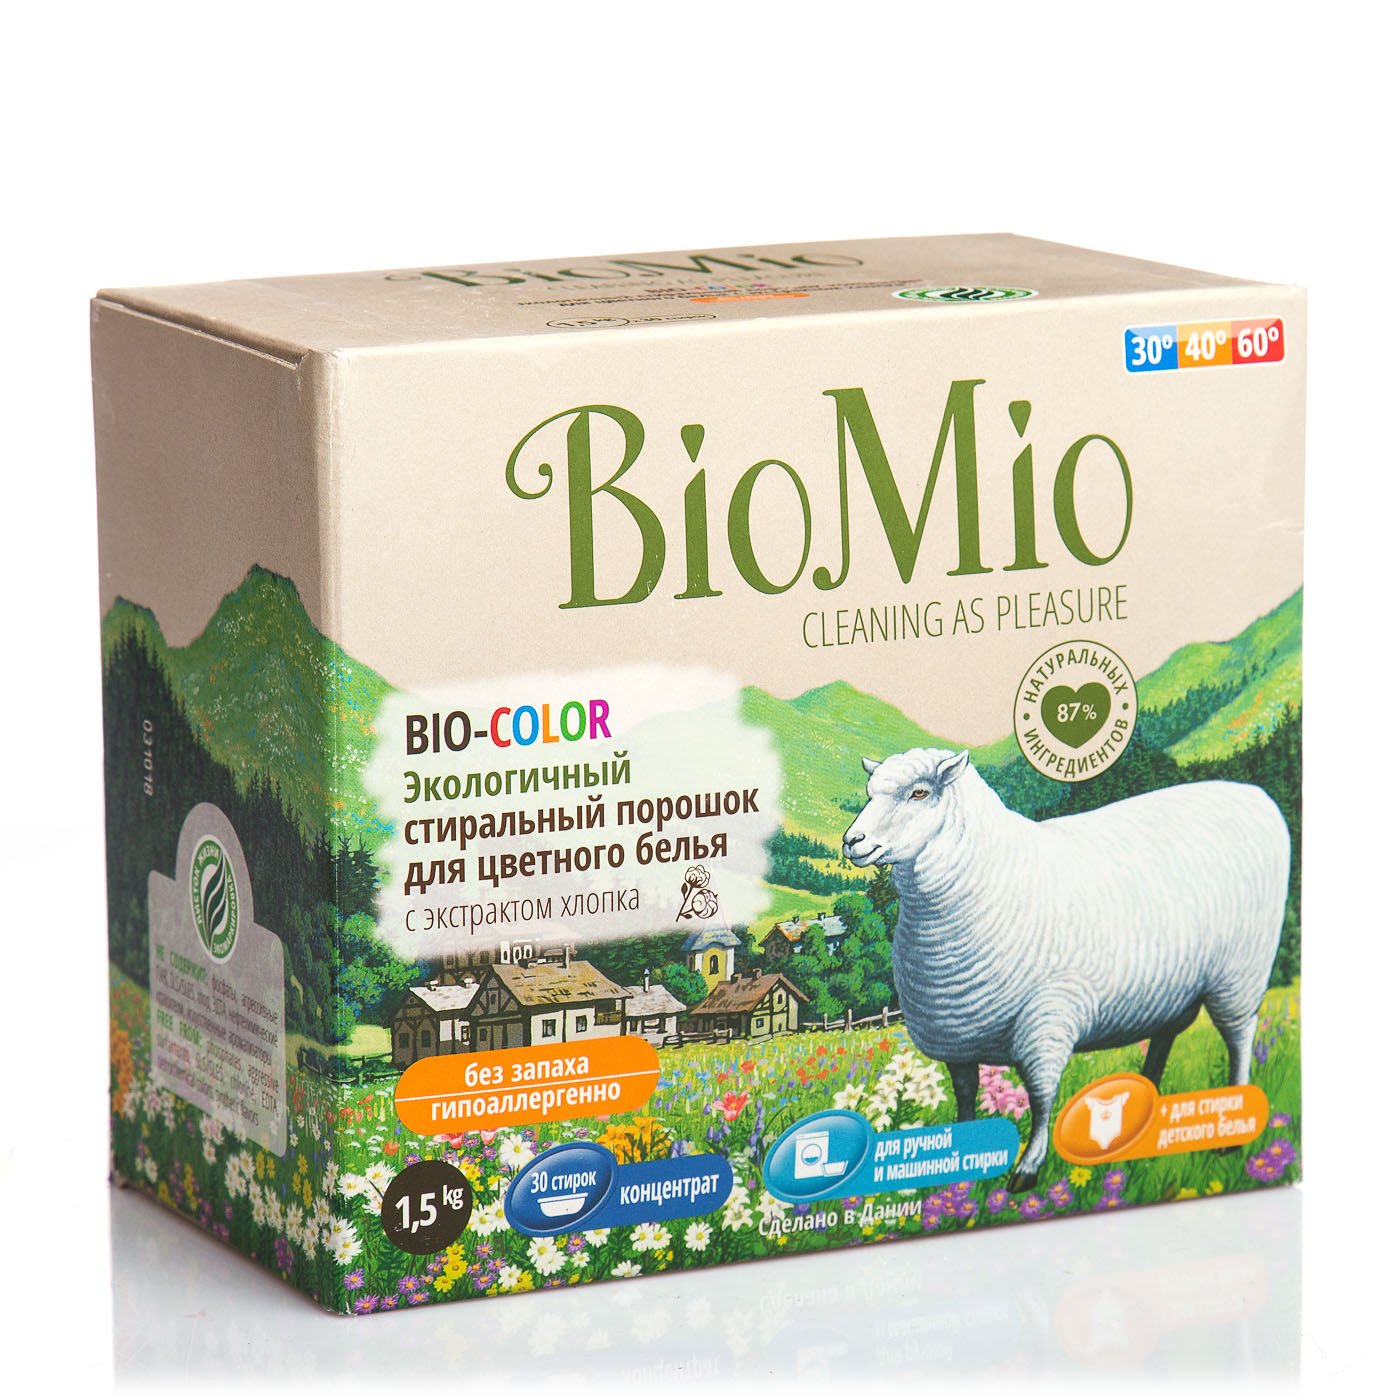 Порошок БиоМио д/цветного белья экологичный к/к 1500г